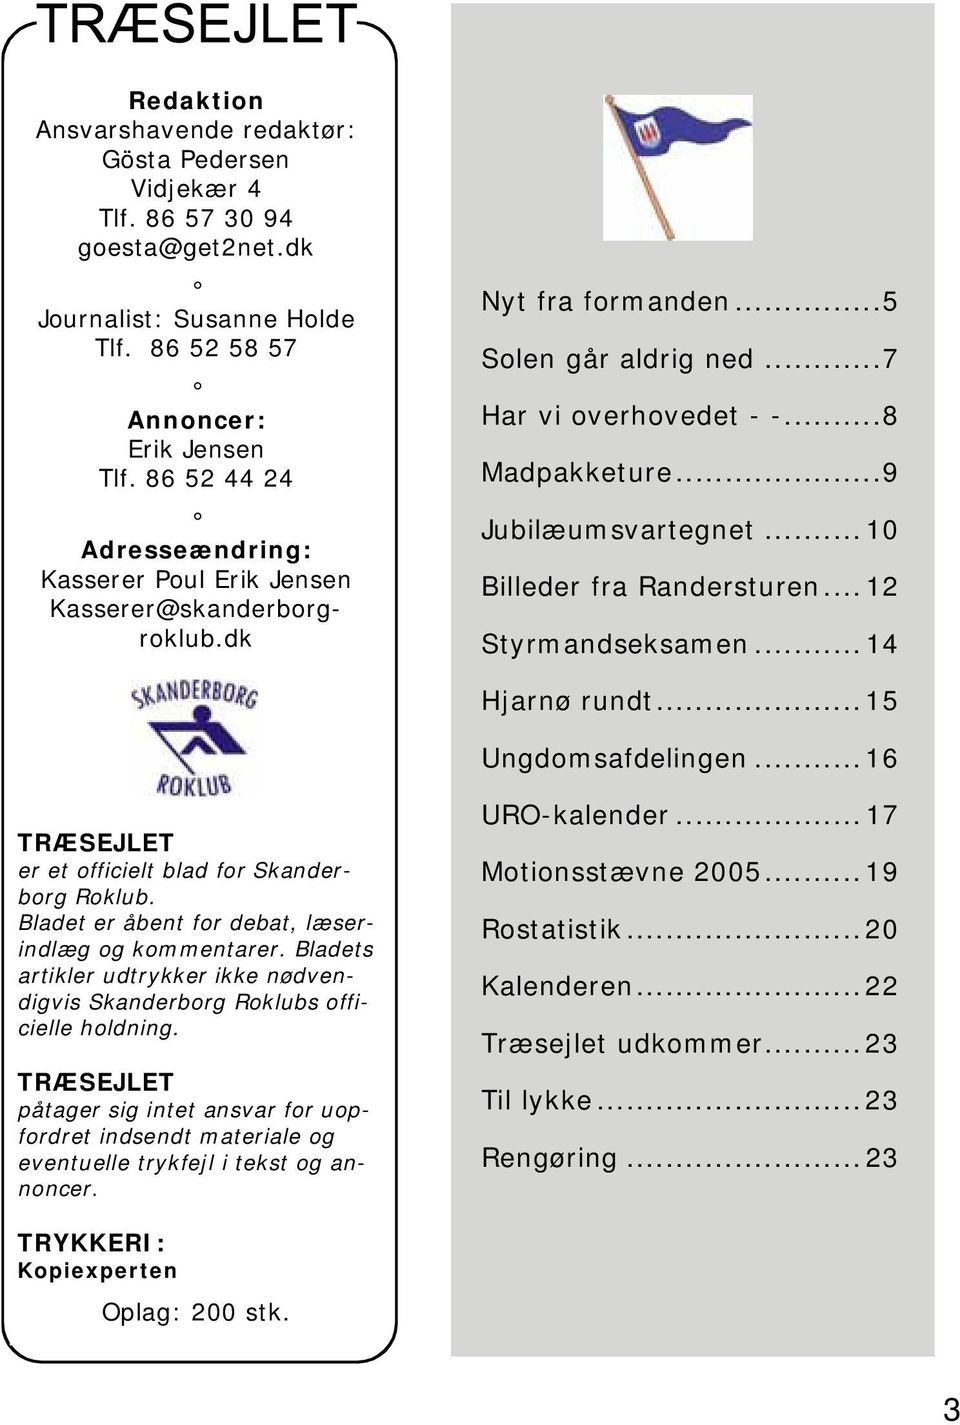 ..10 Billeder fra Randersturen...12 Styrmandseksamen...14 Hjarnø rundt...15 Ungdomsafdelingen...16 TRÆSEJLET er et officielt blad for Skanderborg Roklub.